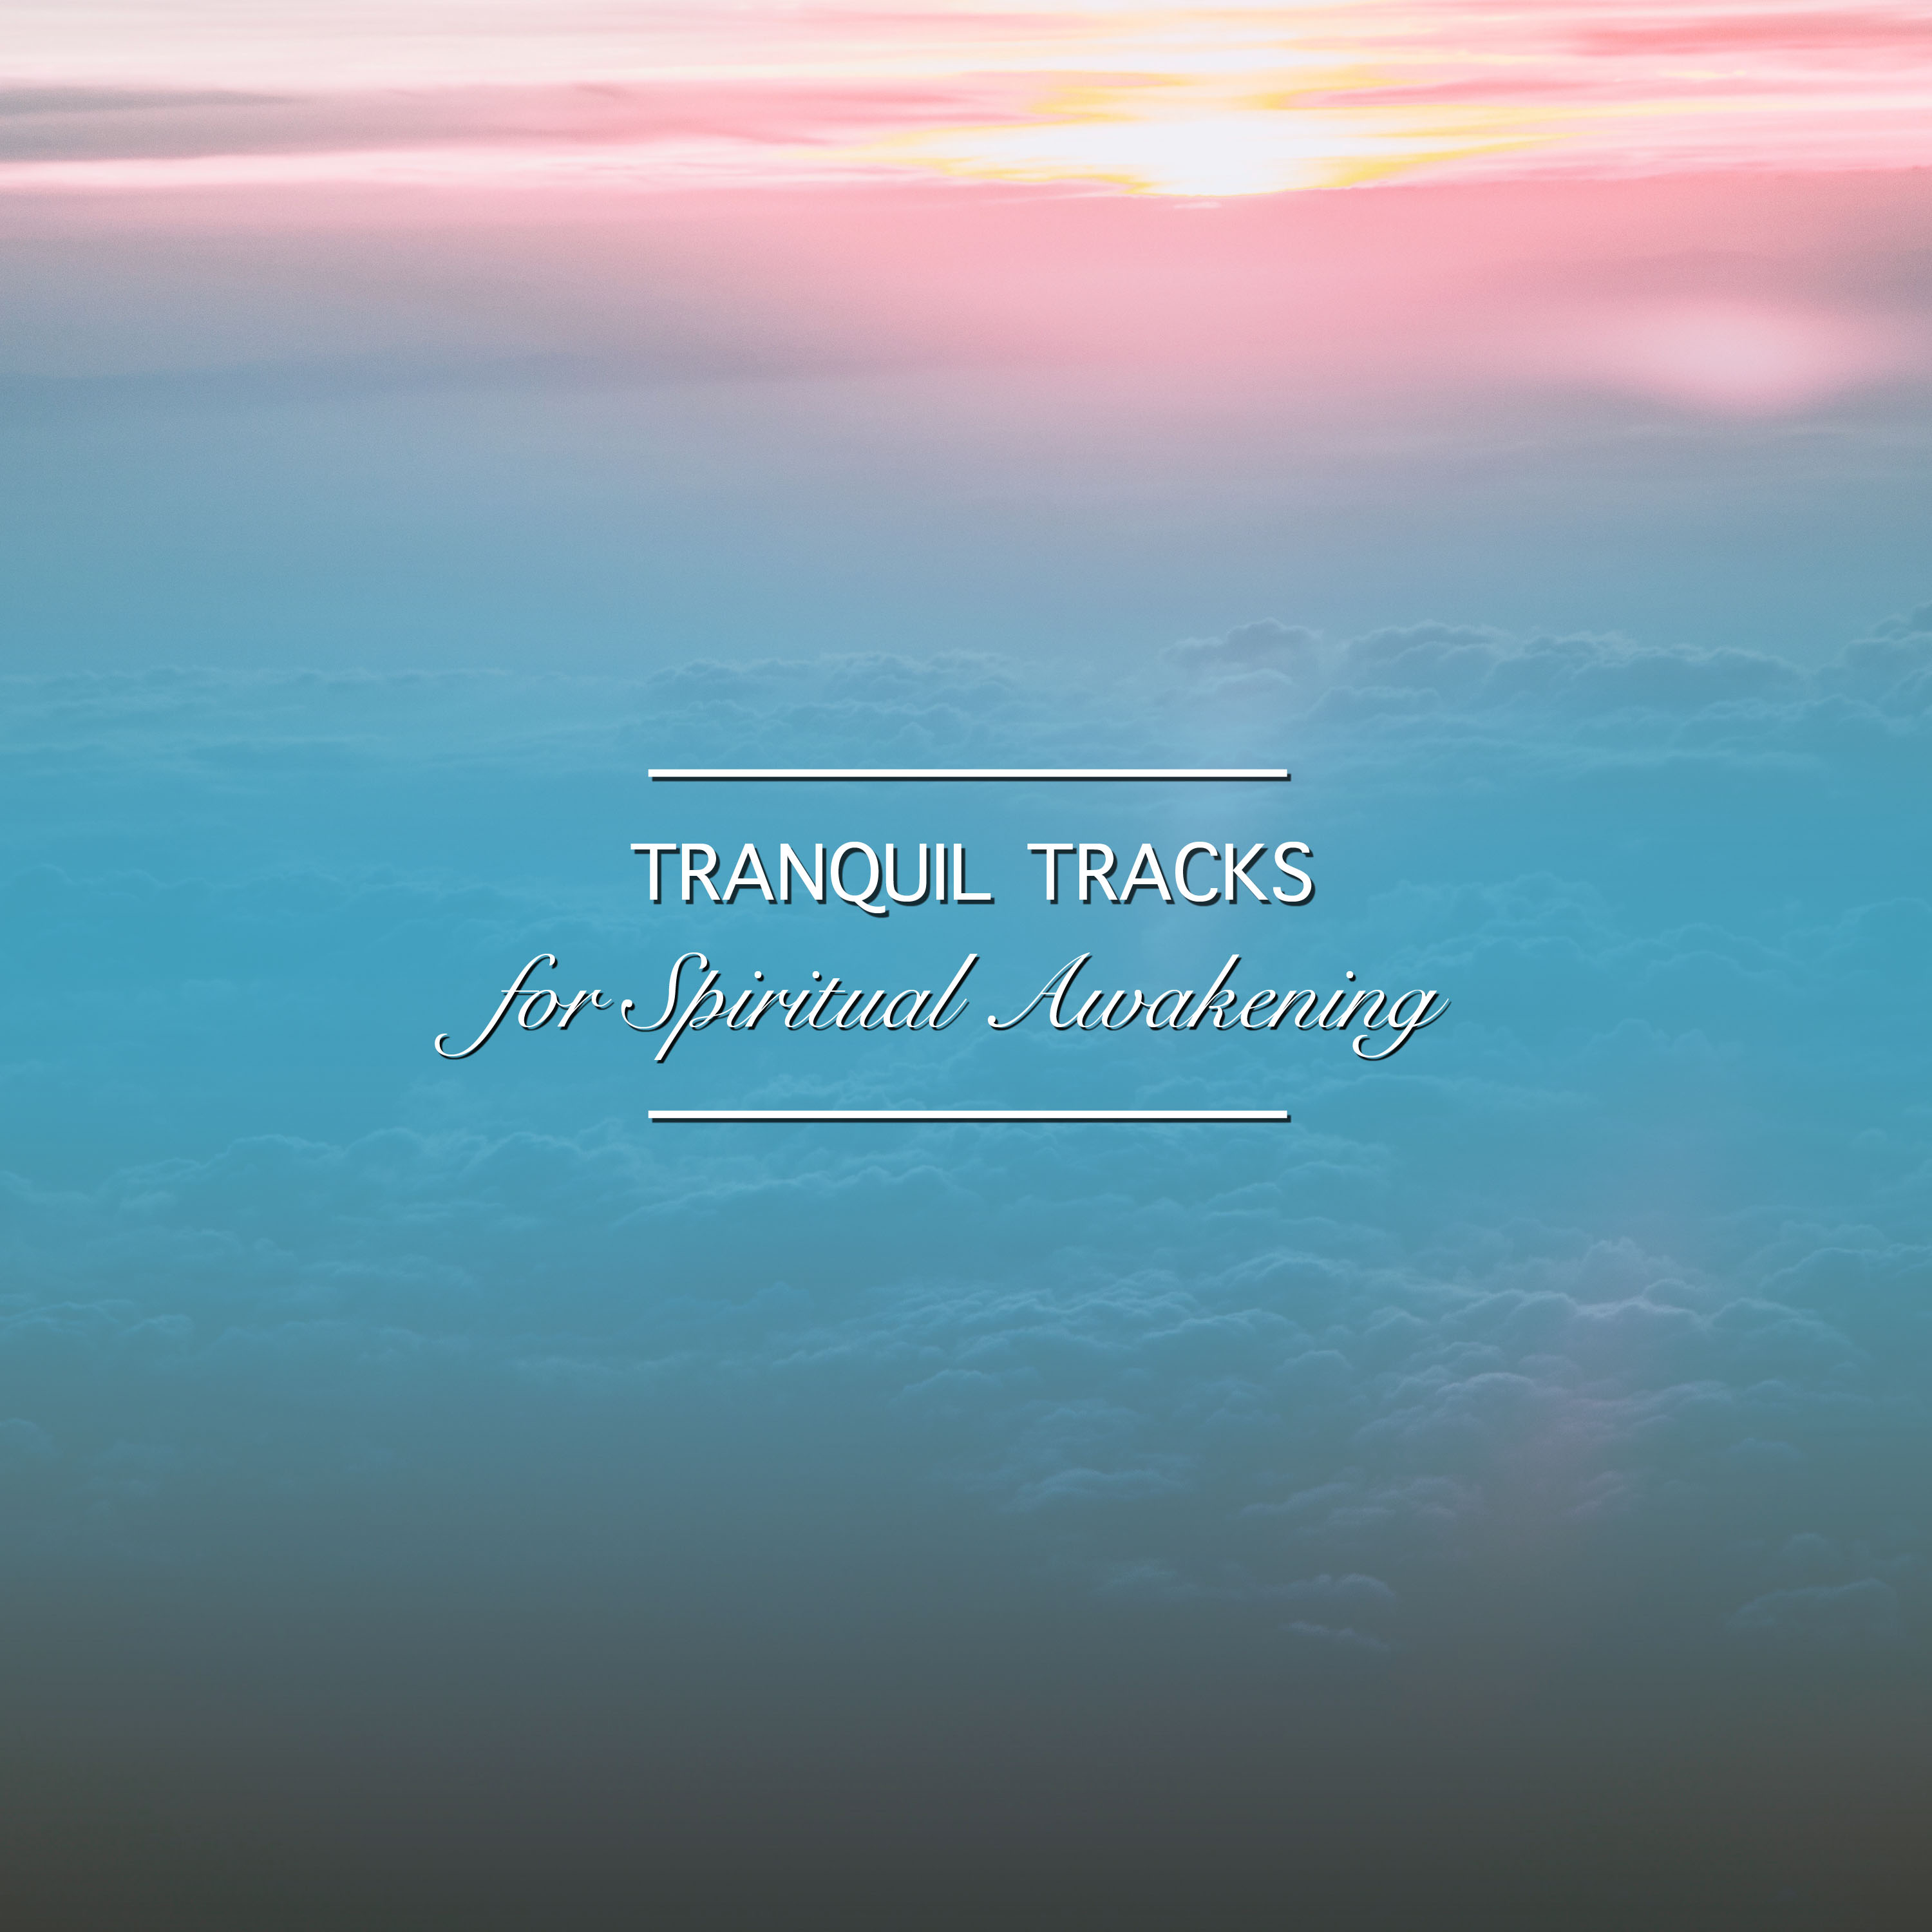 14 Tranquil Tracks for Spirital Awakening